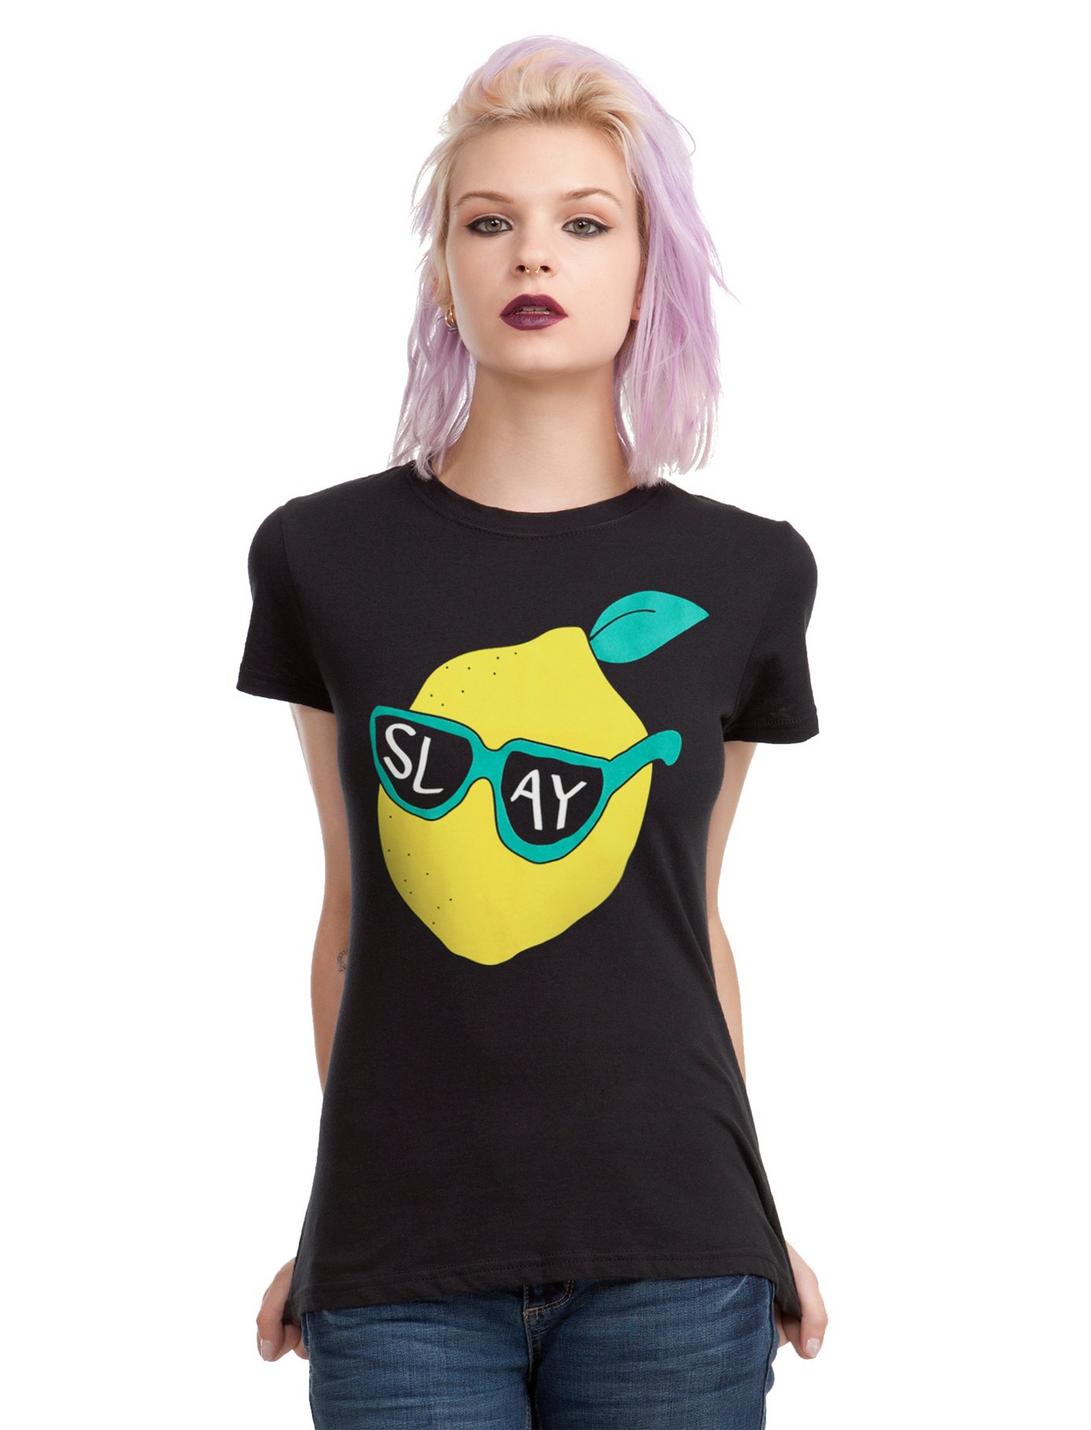 Lemon Slay Girls T-Shirt, BLACK, hi-res